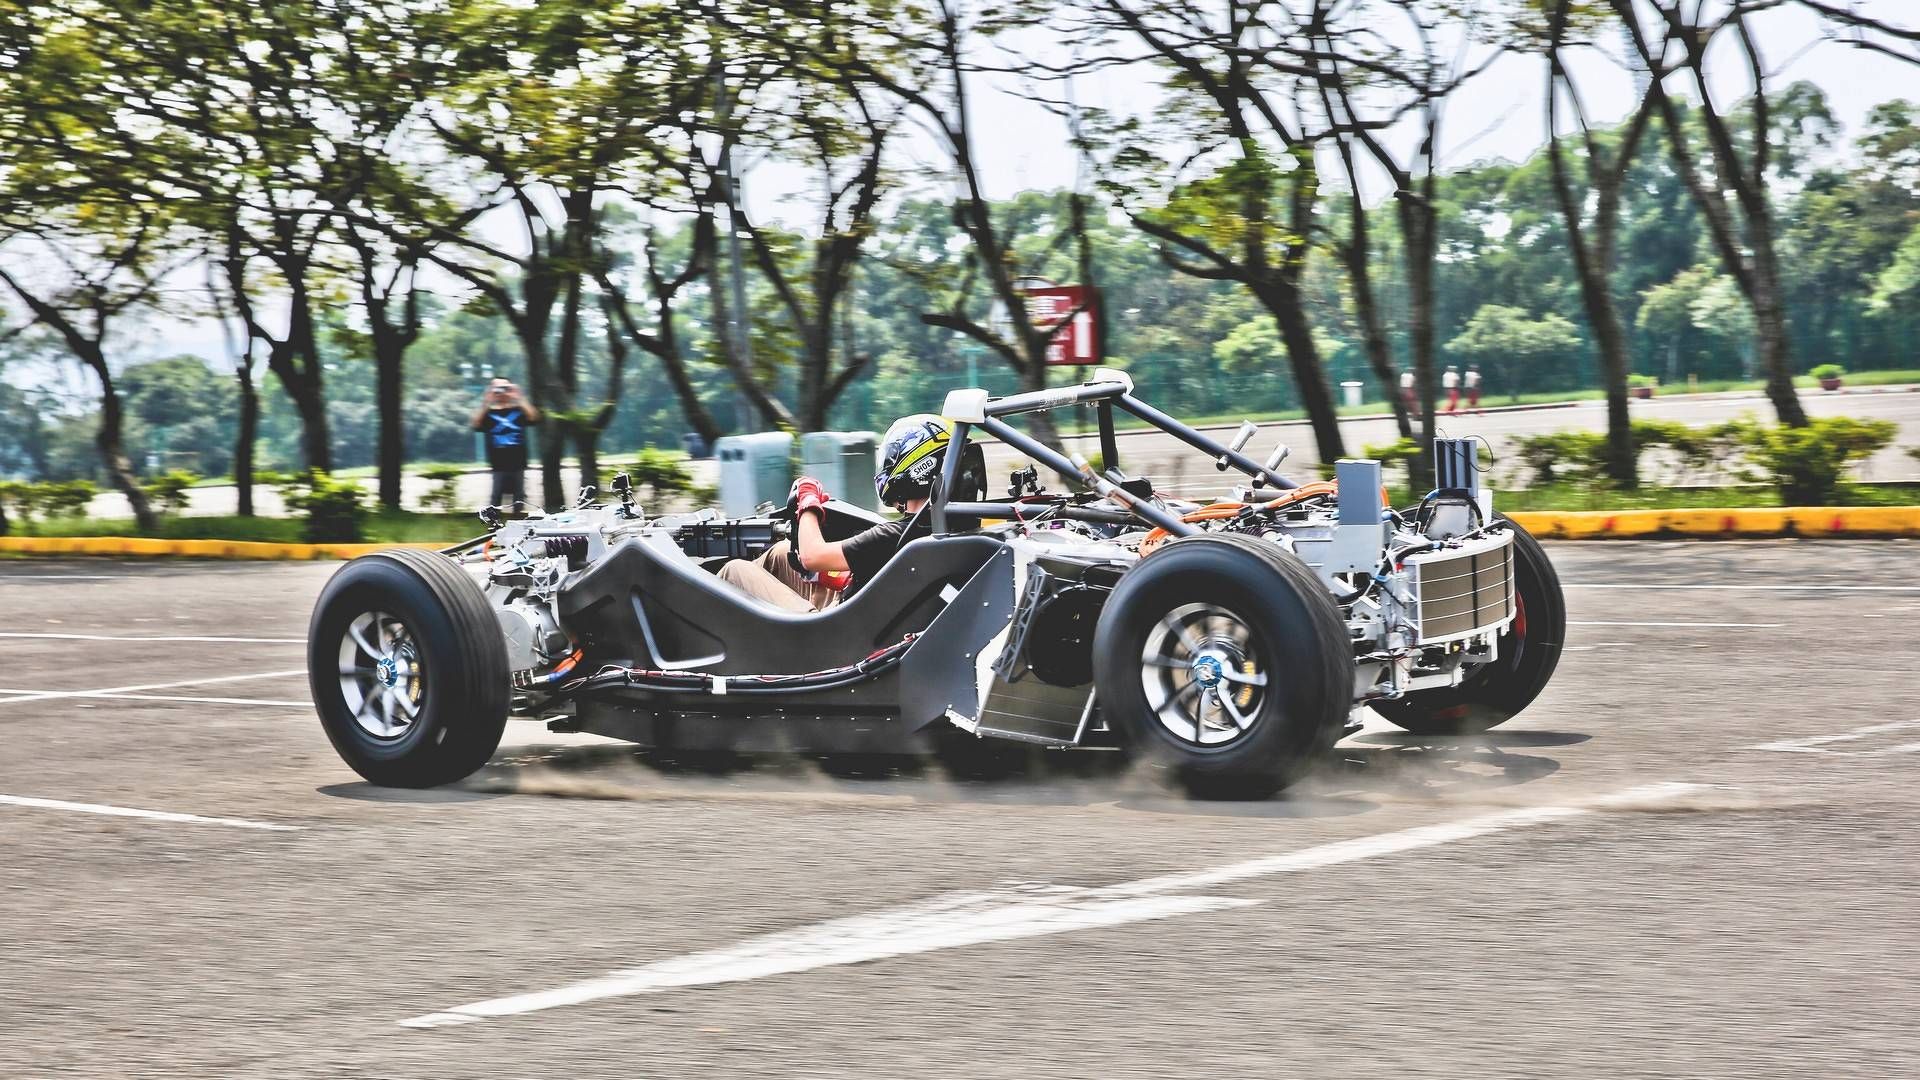 ژینگ موبیلیتی میس R تایوانی / Xing Mobility Miss R Supercar